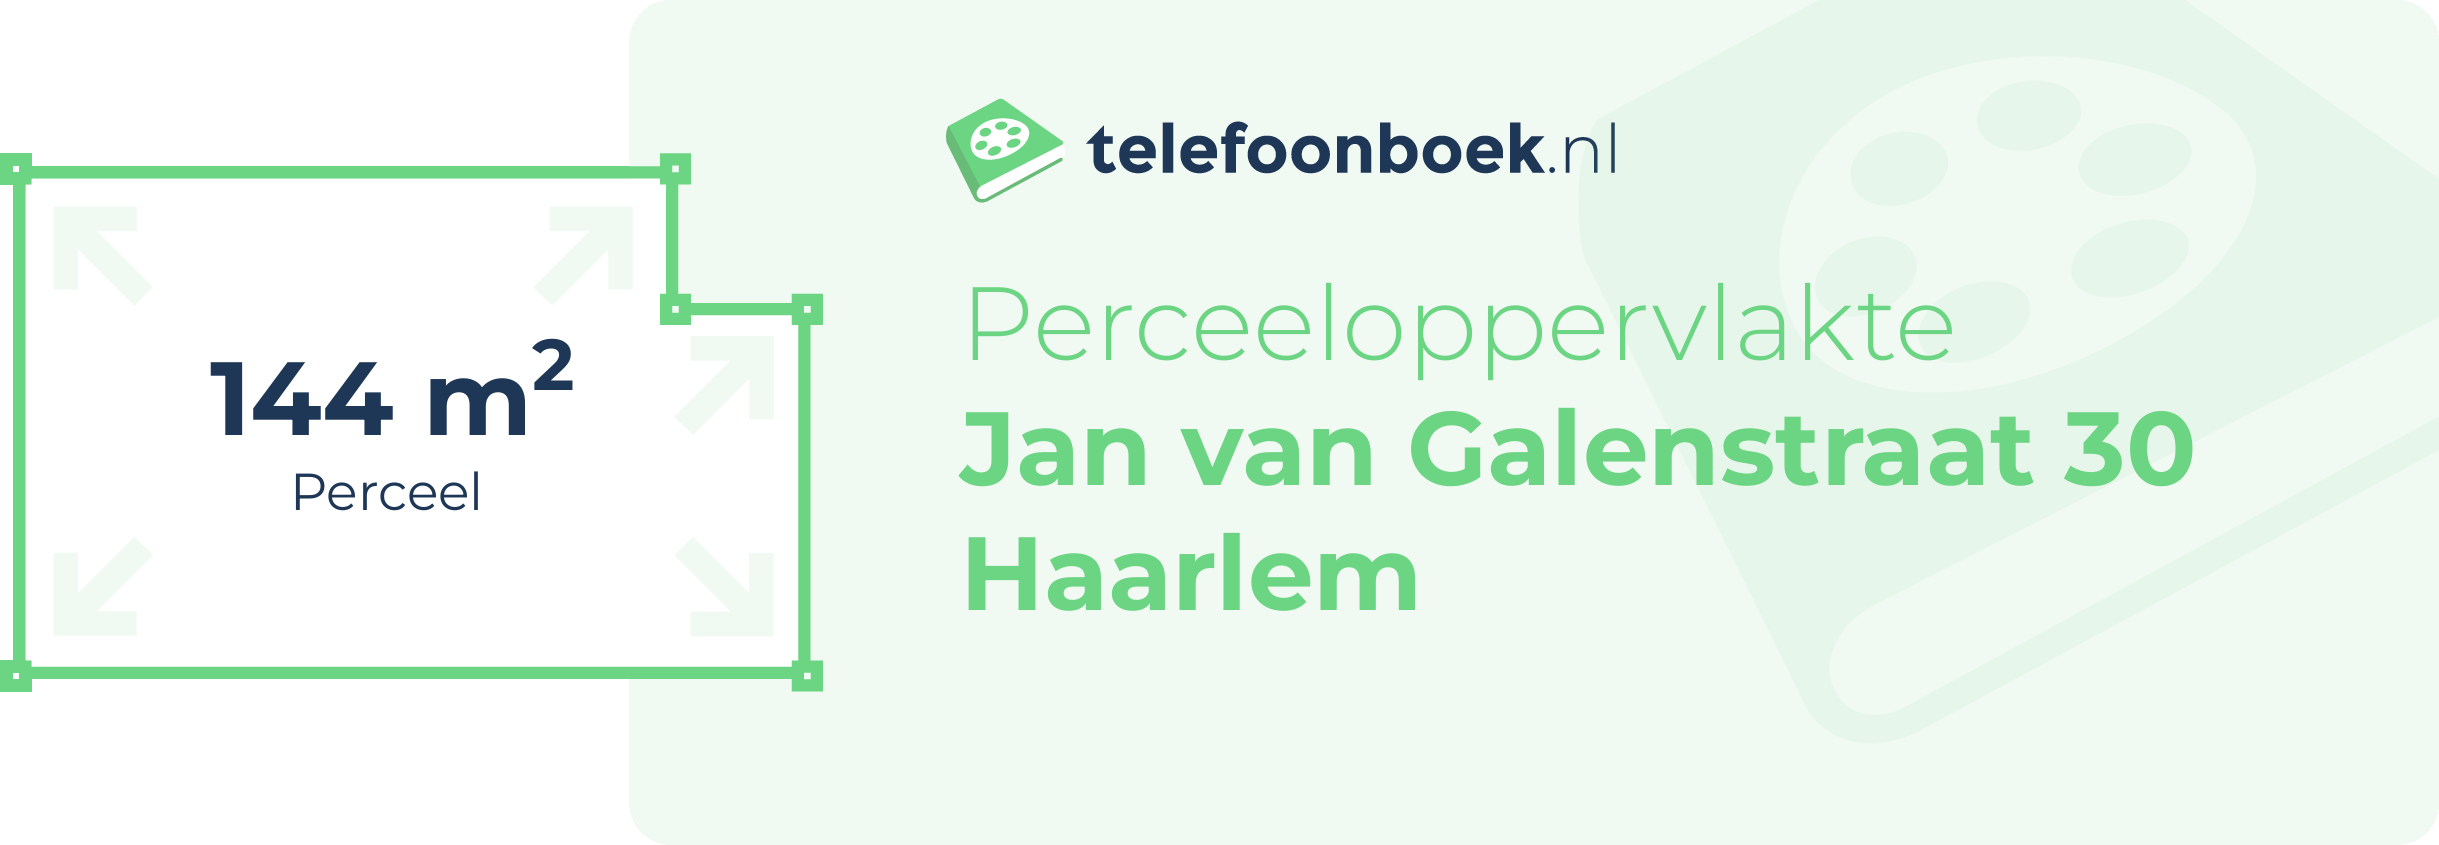 Perceeloppervlakte Jan Van Galenstraat 30 Haarlem